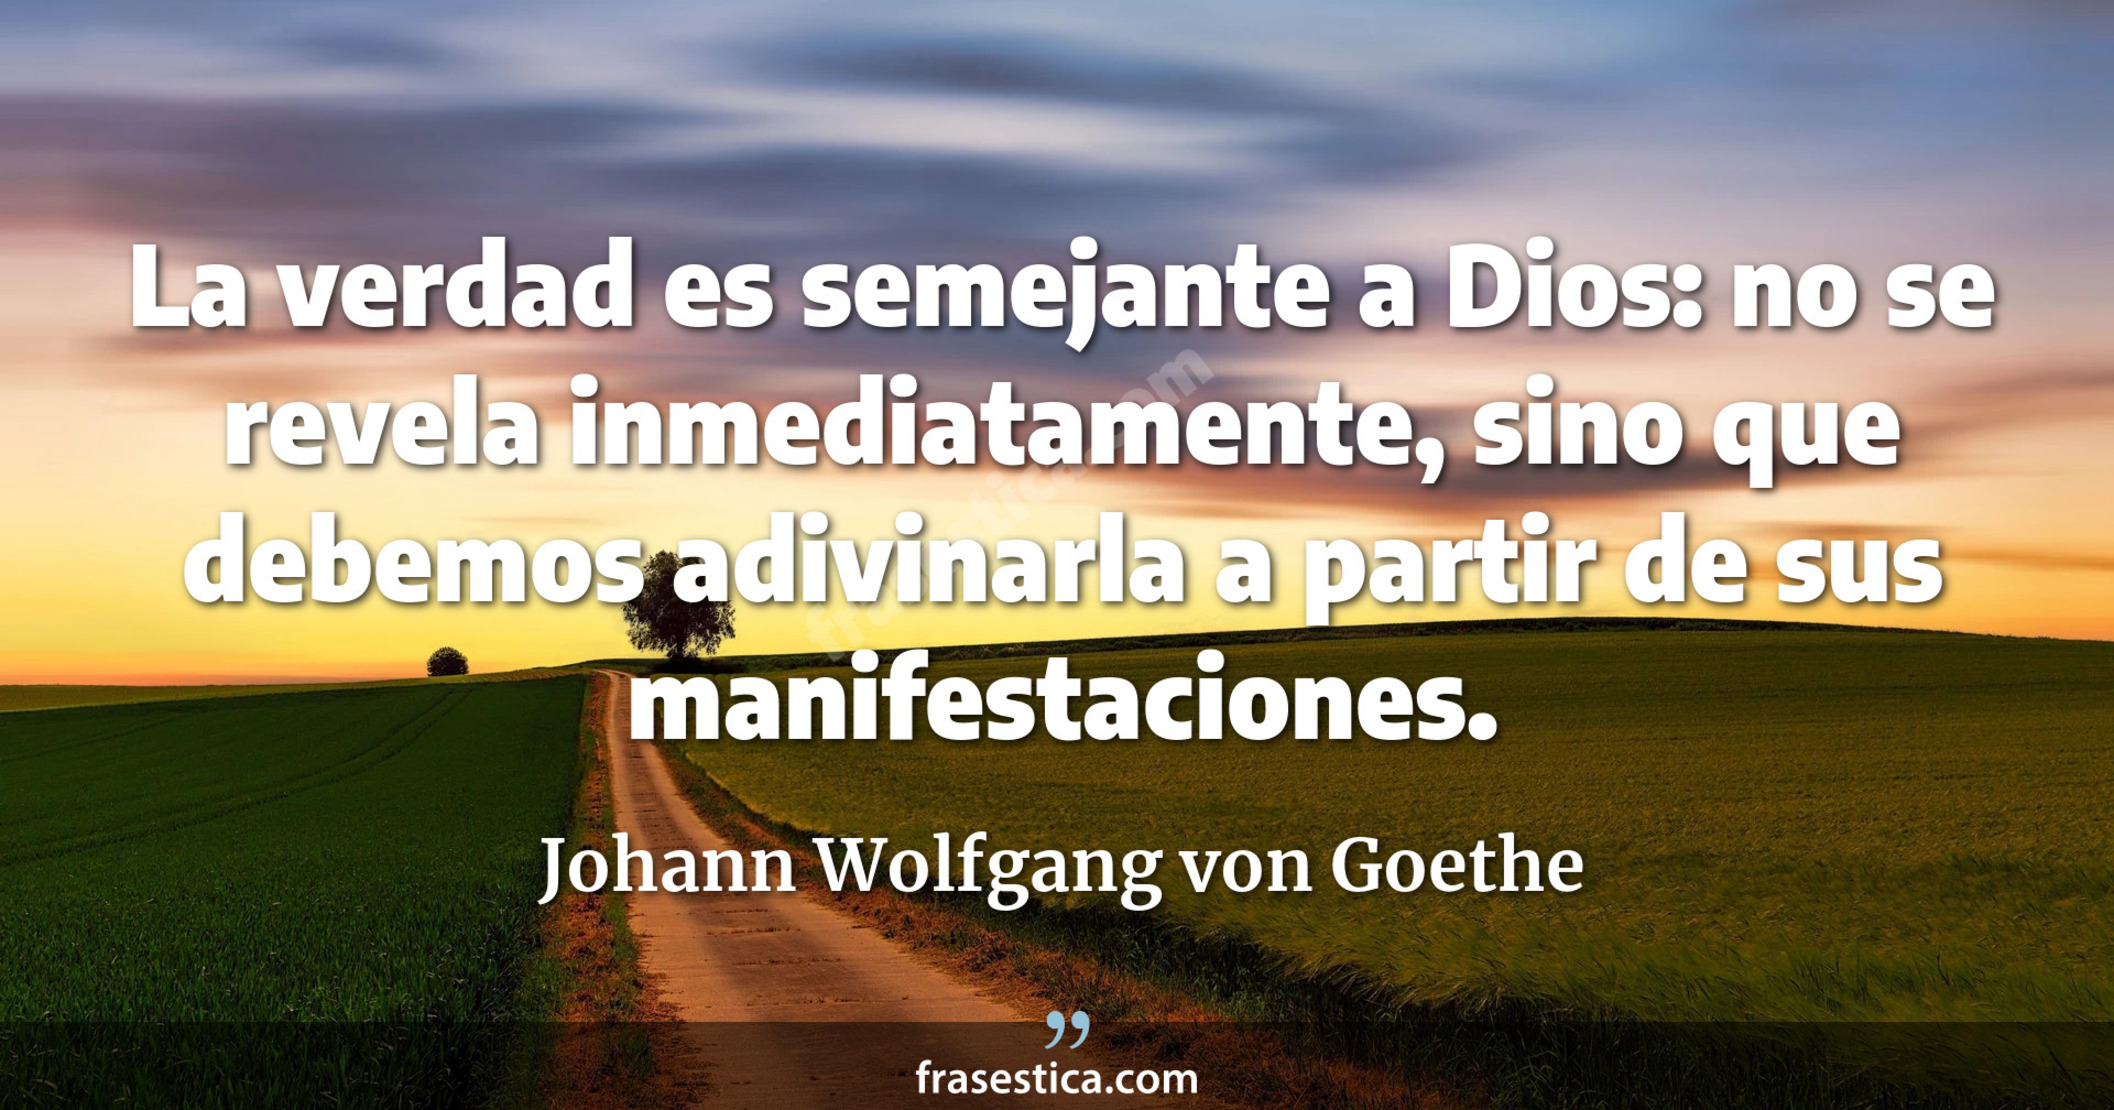 La verdad es semejante a Dios: no se revela inmediatamente, sino que debemos adivinarla a partir de sus manifestaciones. - Johann Wolfgang von Goethe